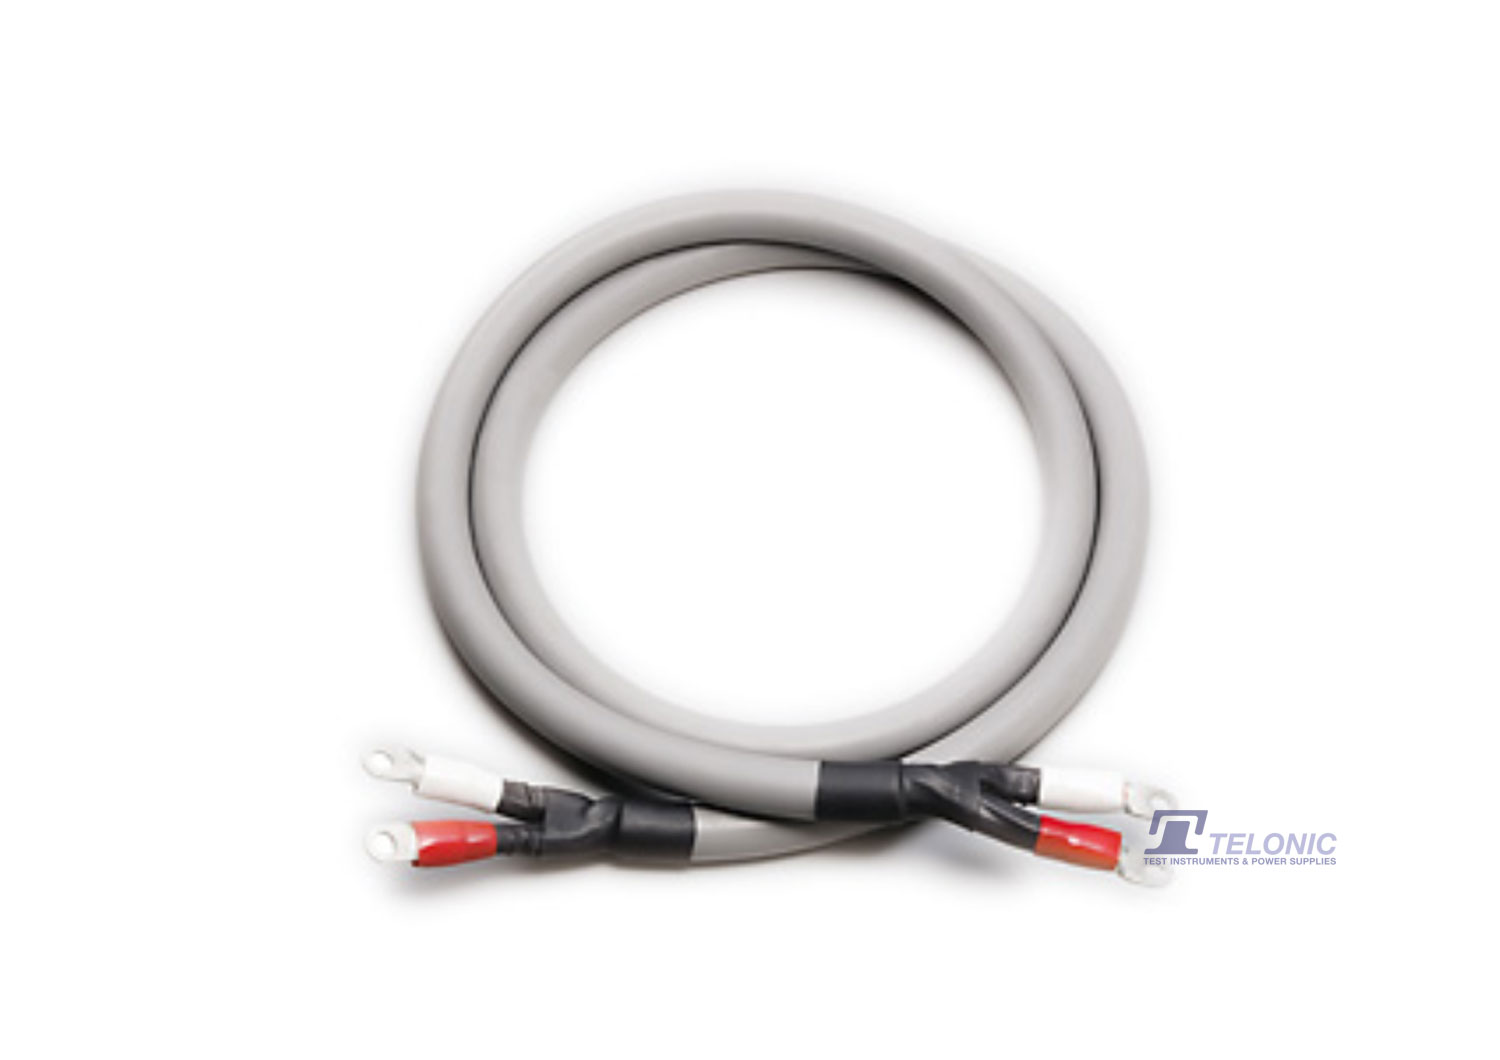 Kikusui TL03-PLZ Low Inductance Cable